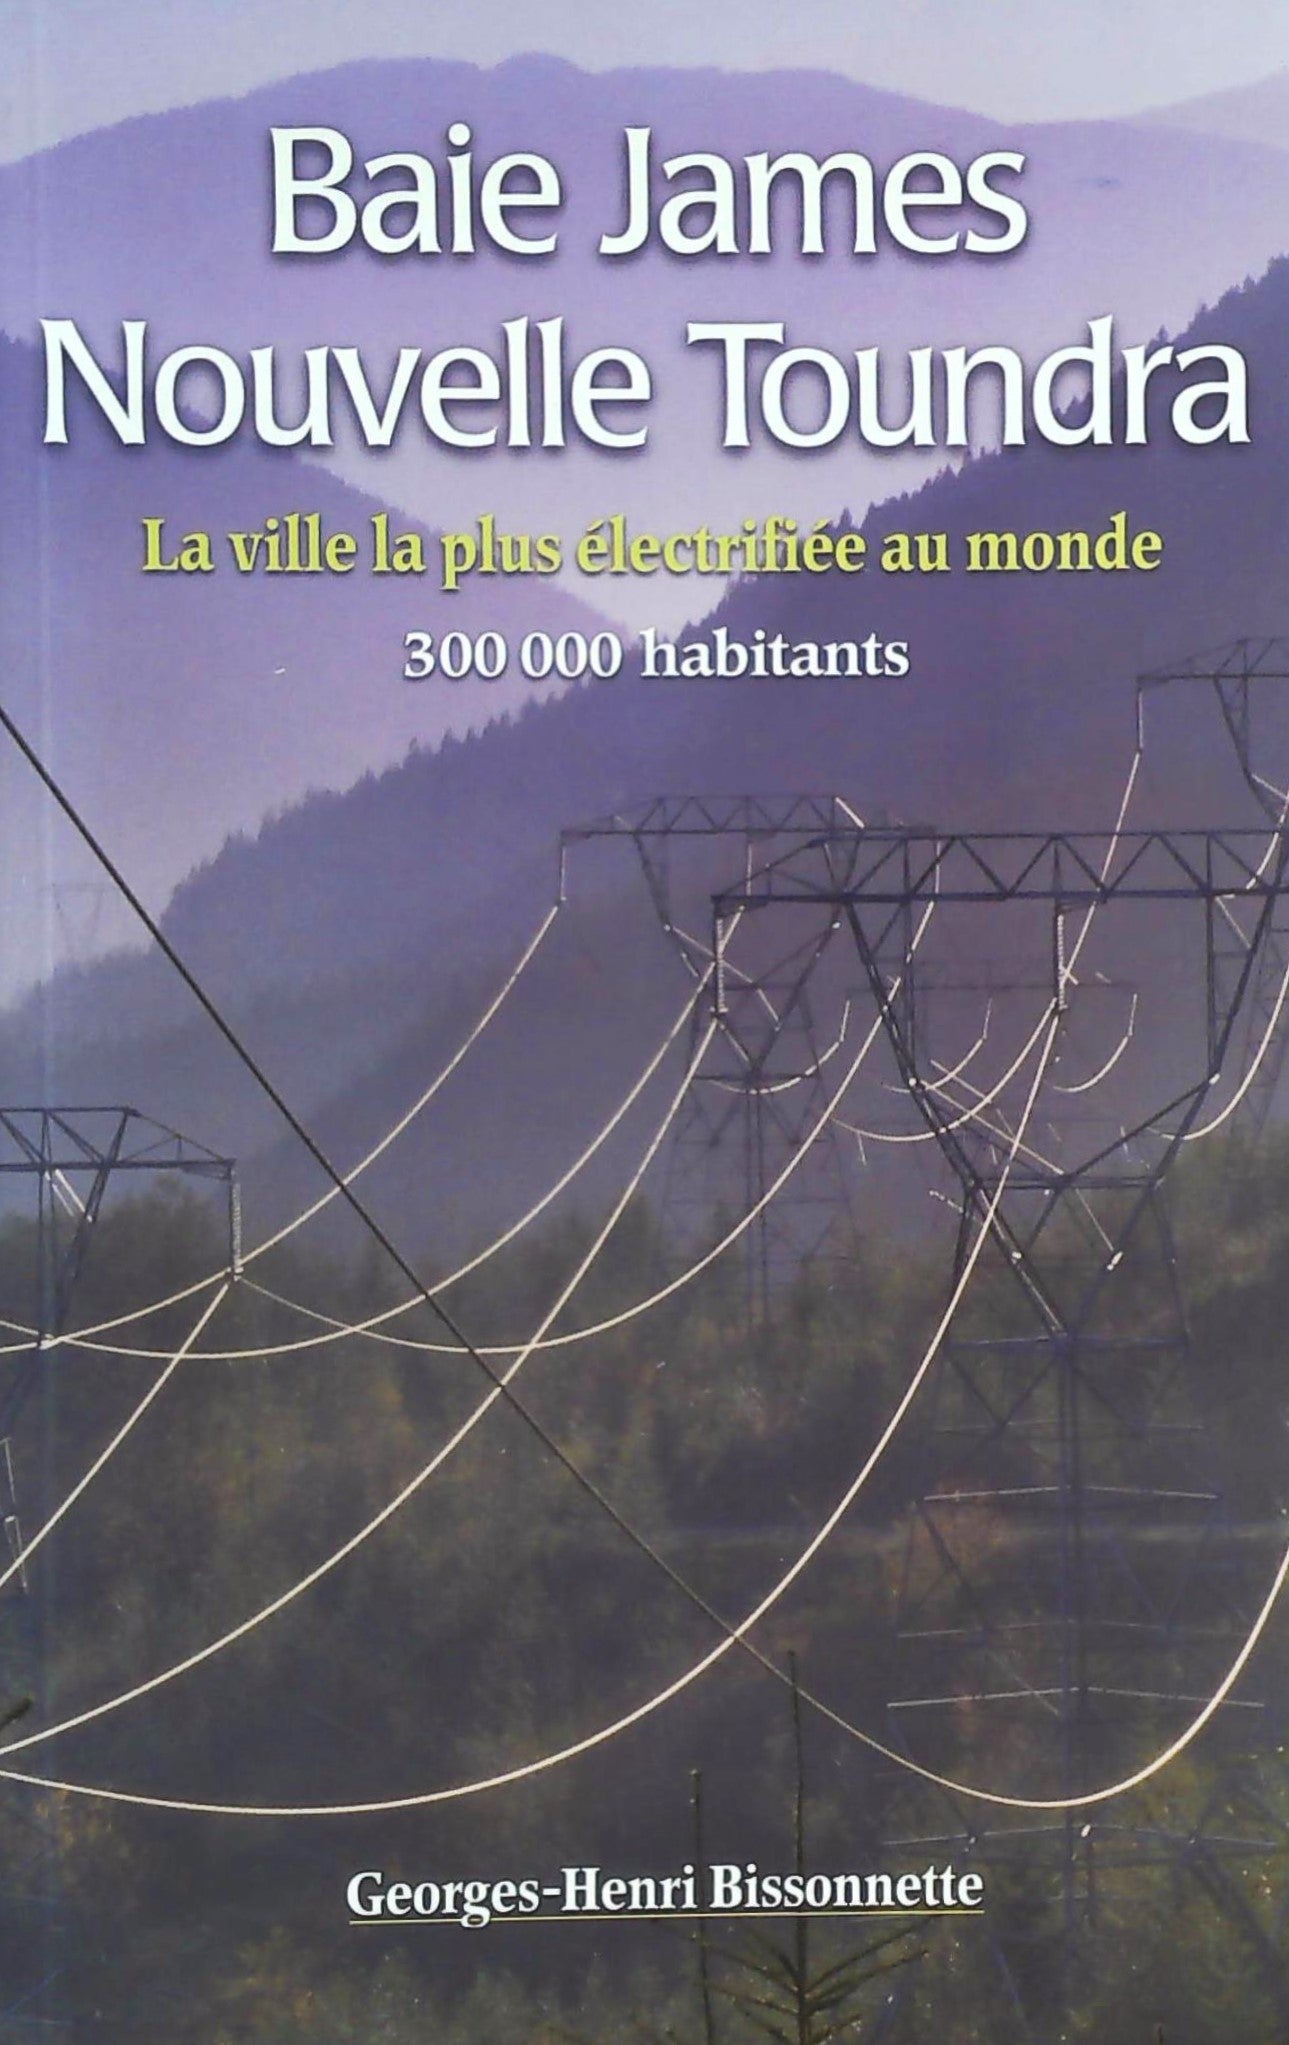 Livre ISBN 2980604607 Baie James, nouvelle toundra : La ville la plus électrifiée au monde (Georges-Henri Bissonnette)